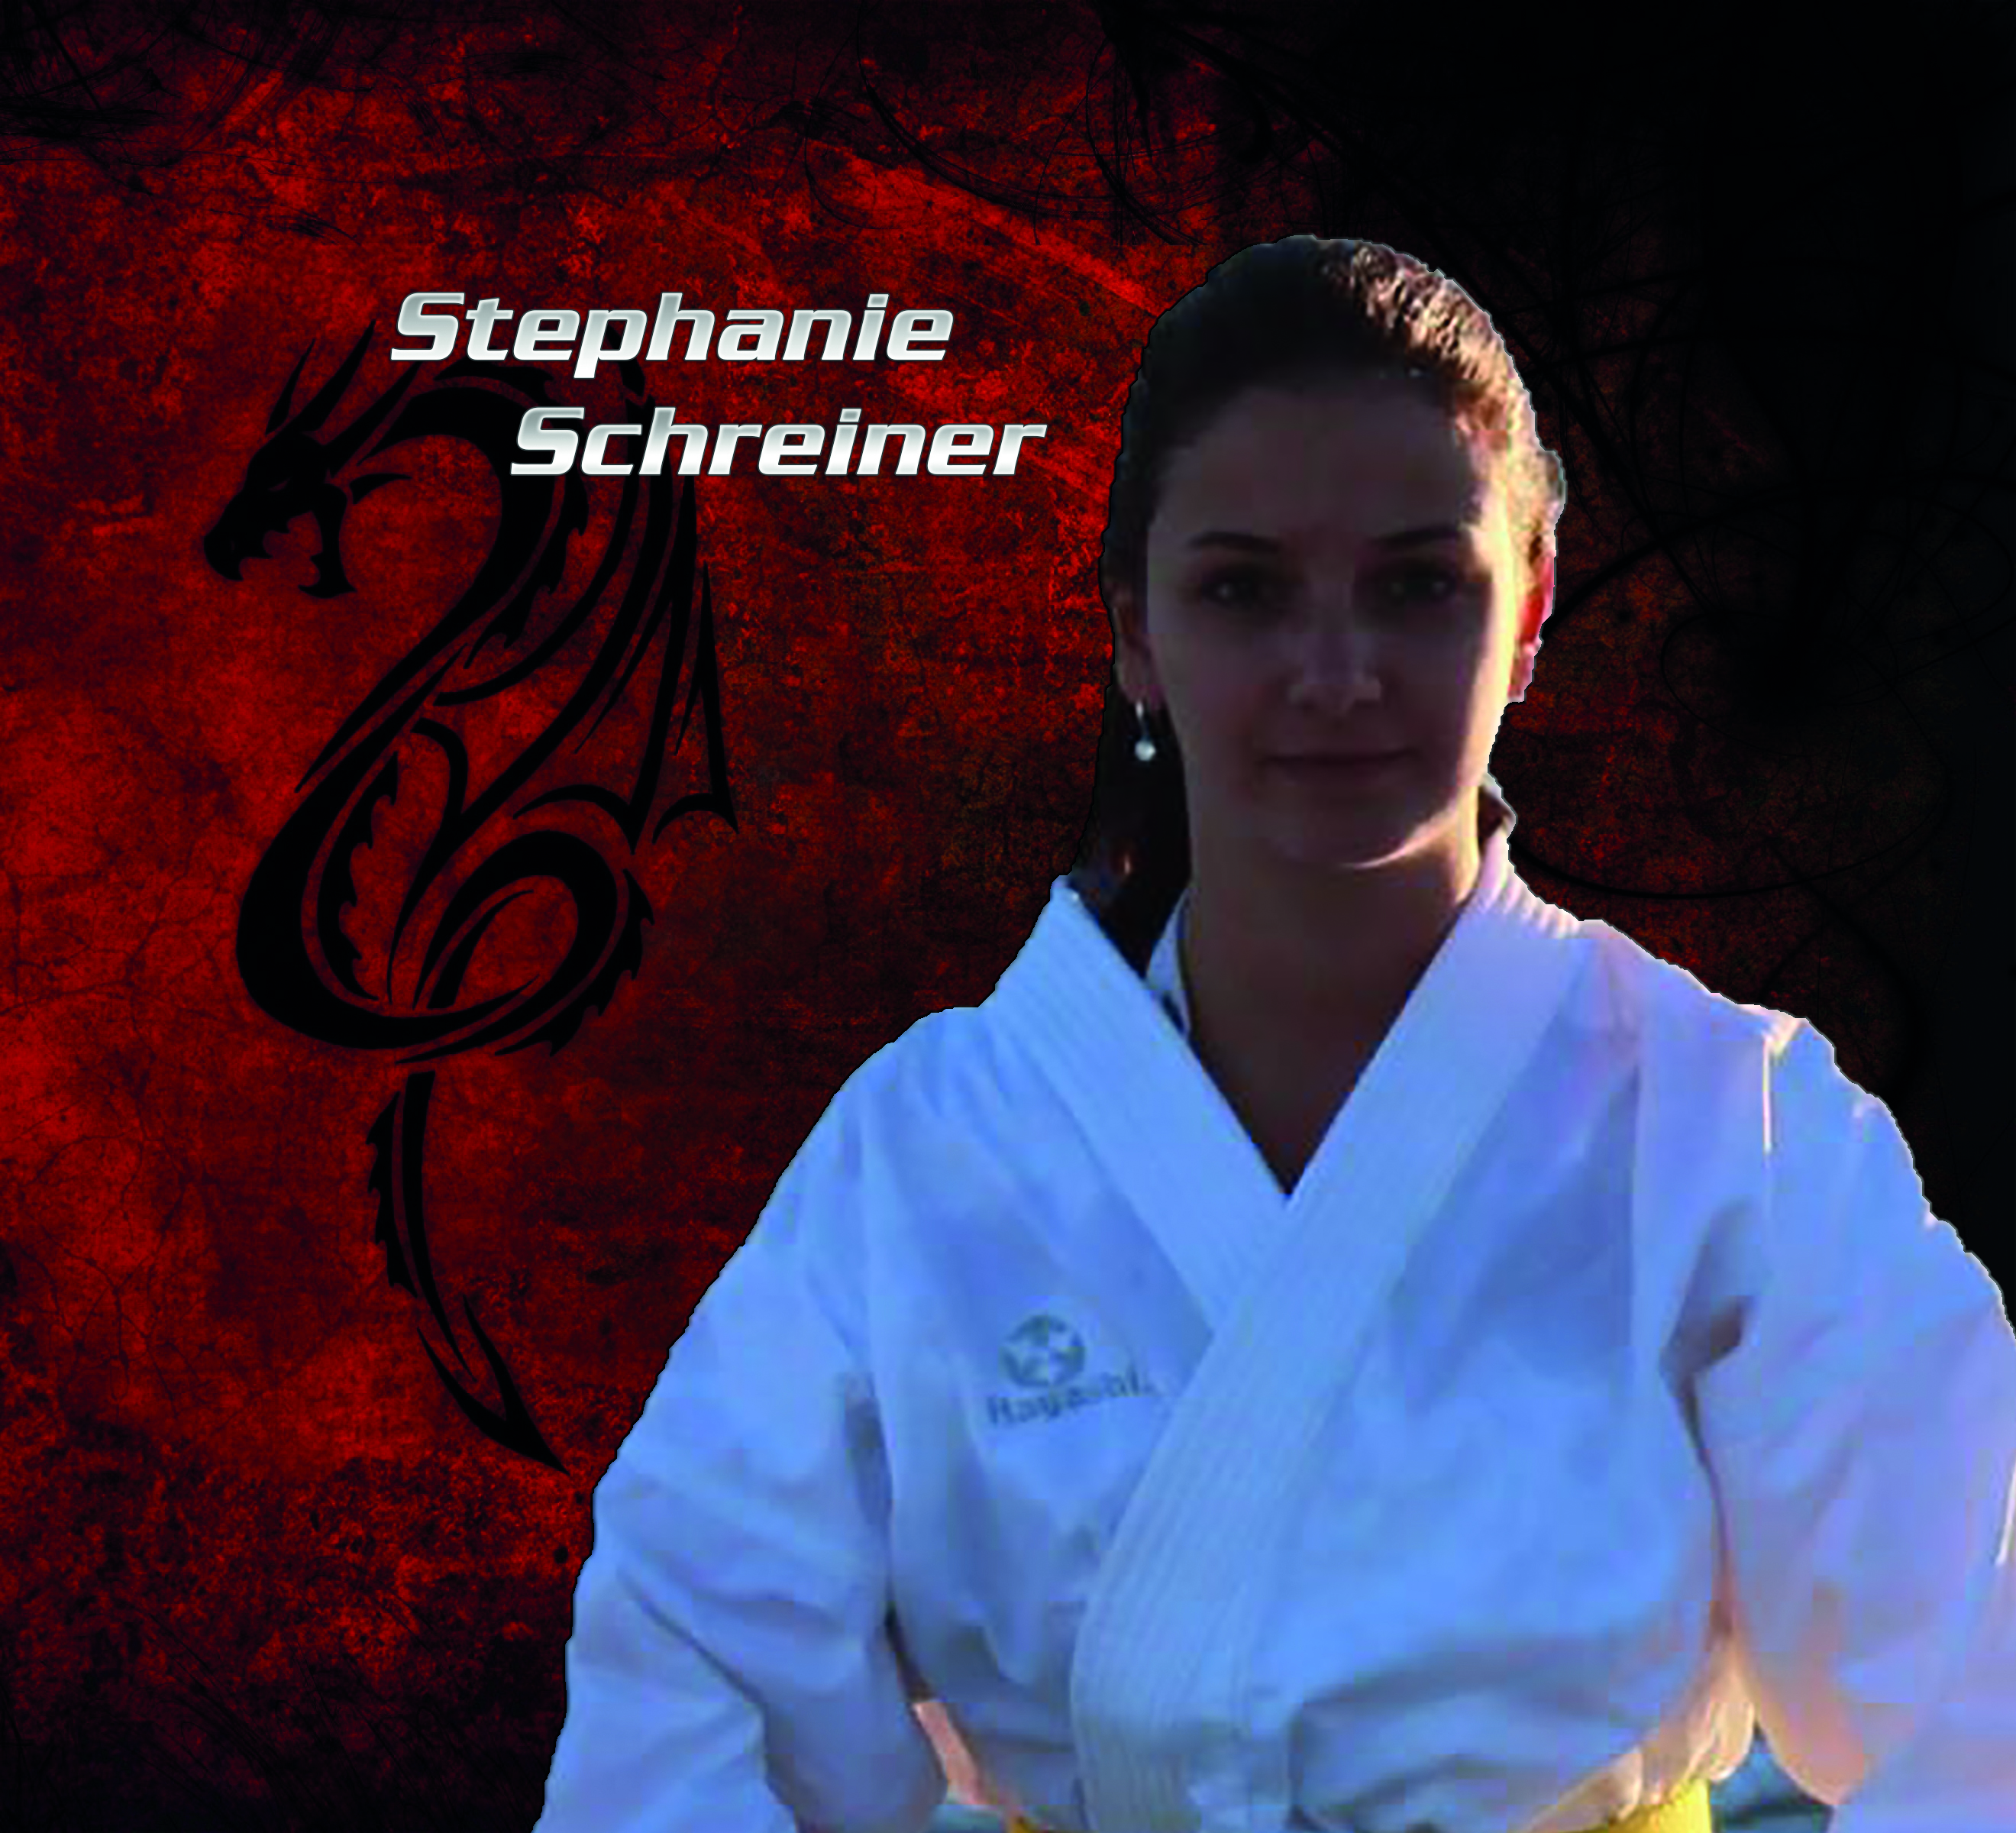 Stephanie Schreiner